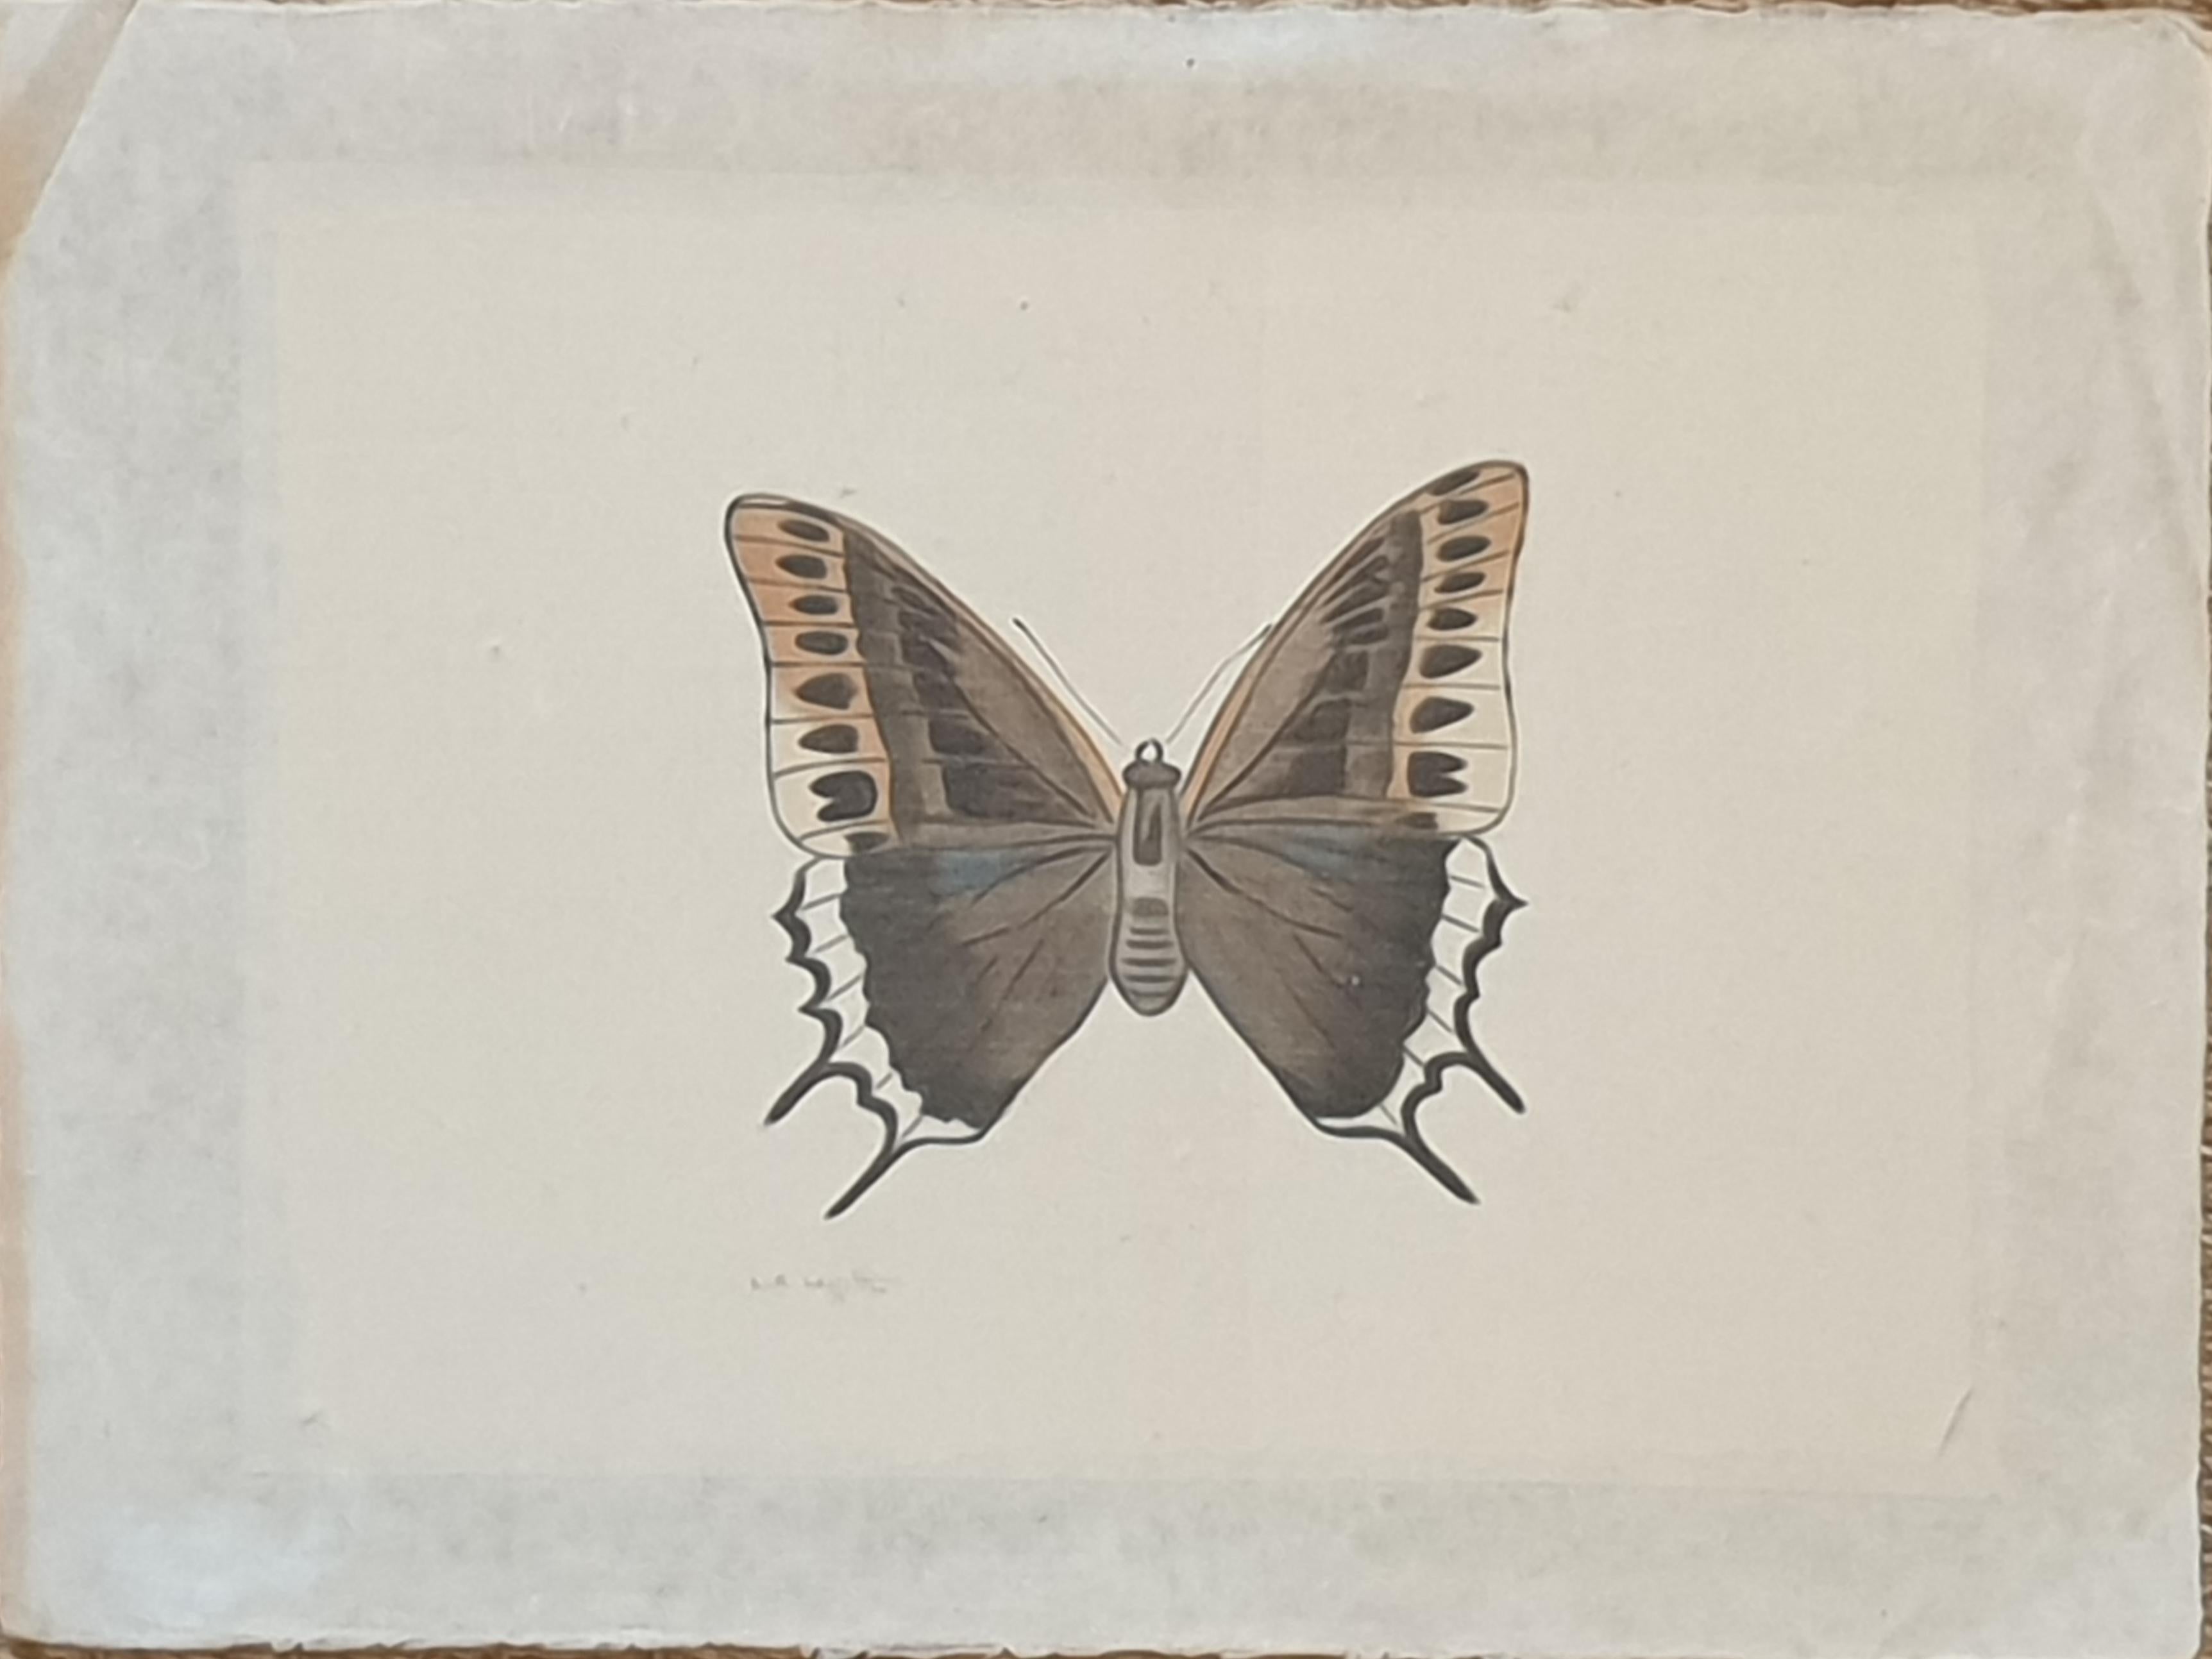 Eines von vier Aquarellen von Schmetterlingen auf Seide, aufgetragen auf handgeschöpftem Papier, mit handgeschnittenen Rändern, von der französischen Künstlerin La Roche Laffitte. Signiert unten links. (Die anderen 3 Artikel sind separat